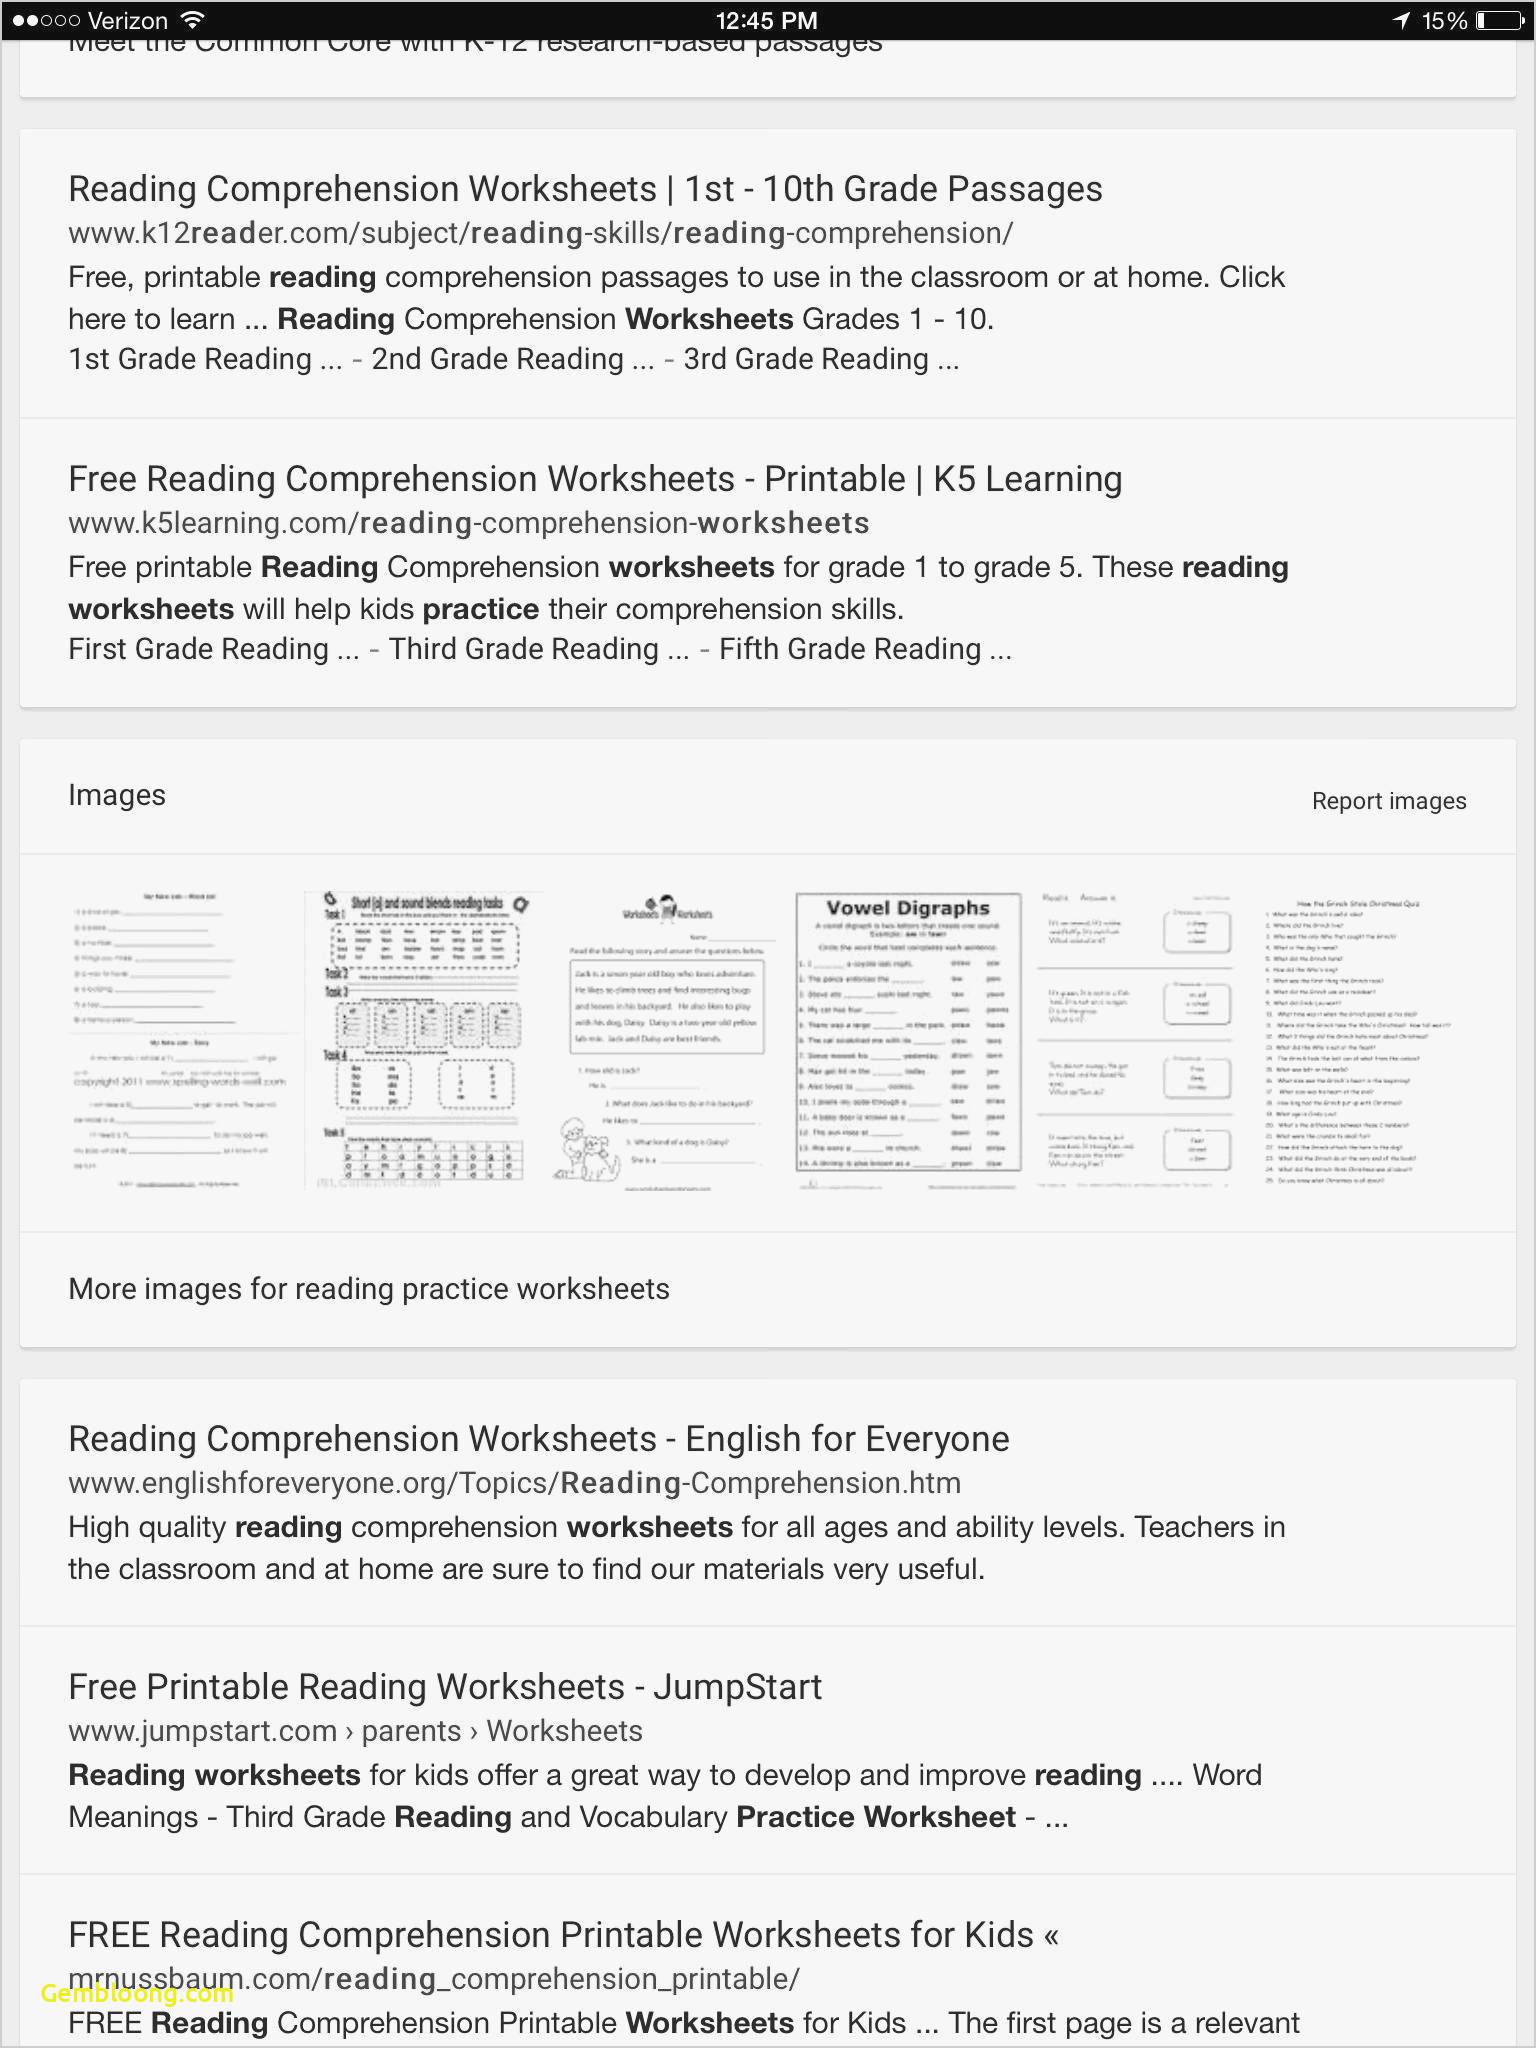 Reading Comprehension Worksheets For 1St Grade - Cramerforcongress | Free Printable Worksheets Reading Comprehension 5Th Grade